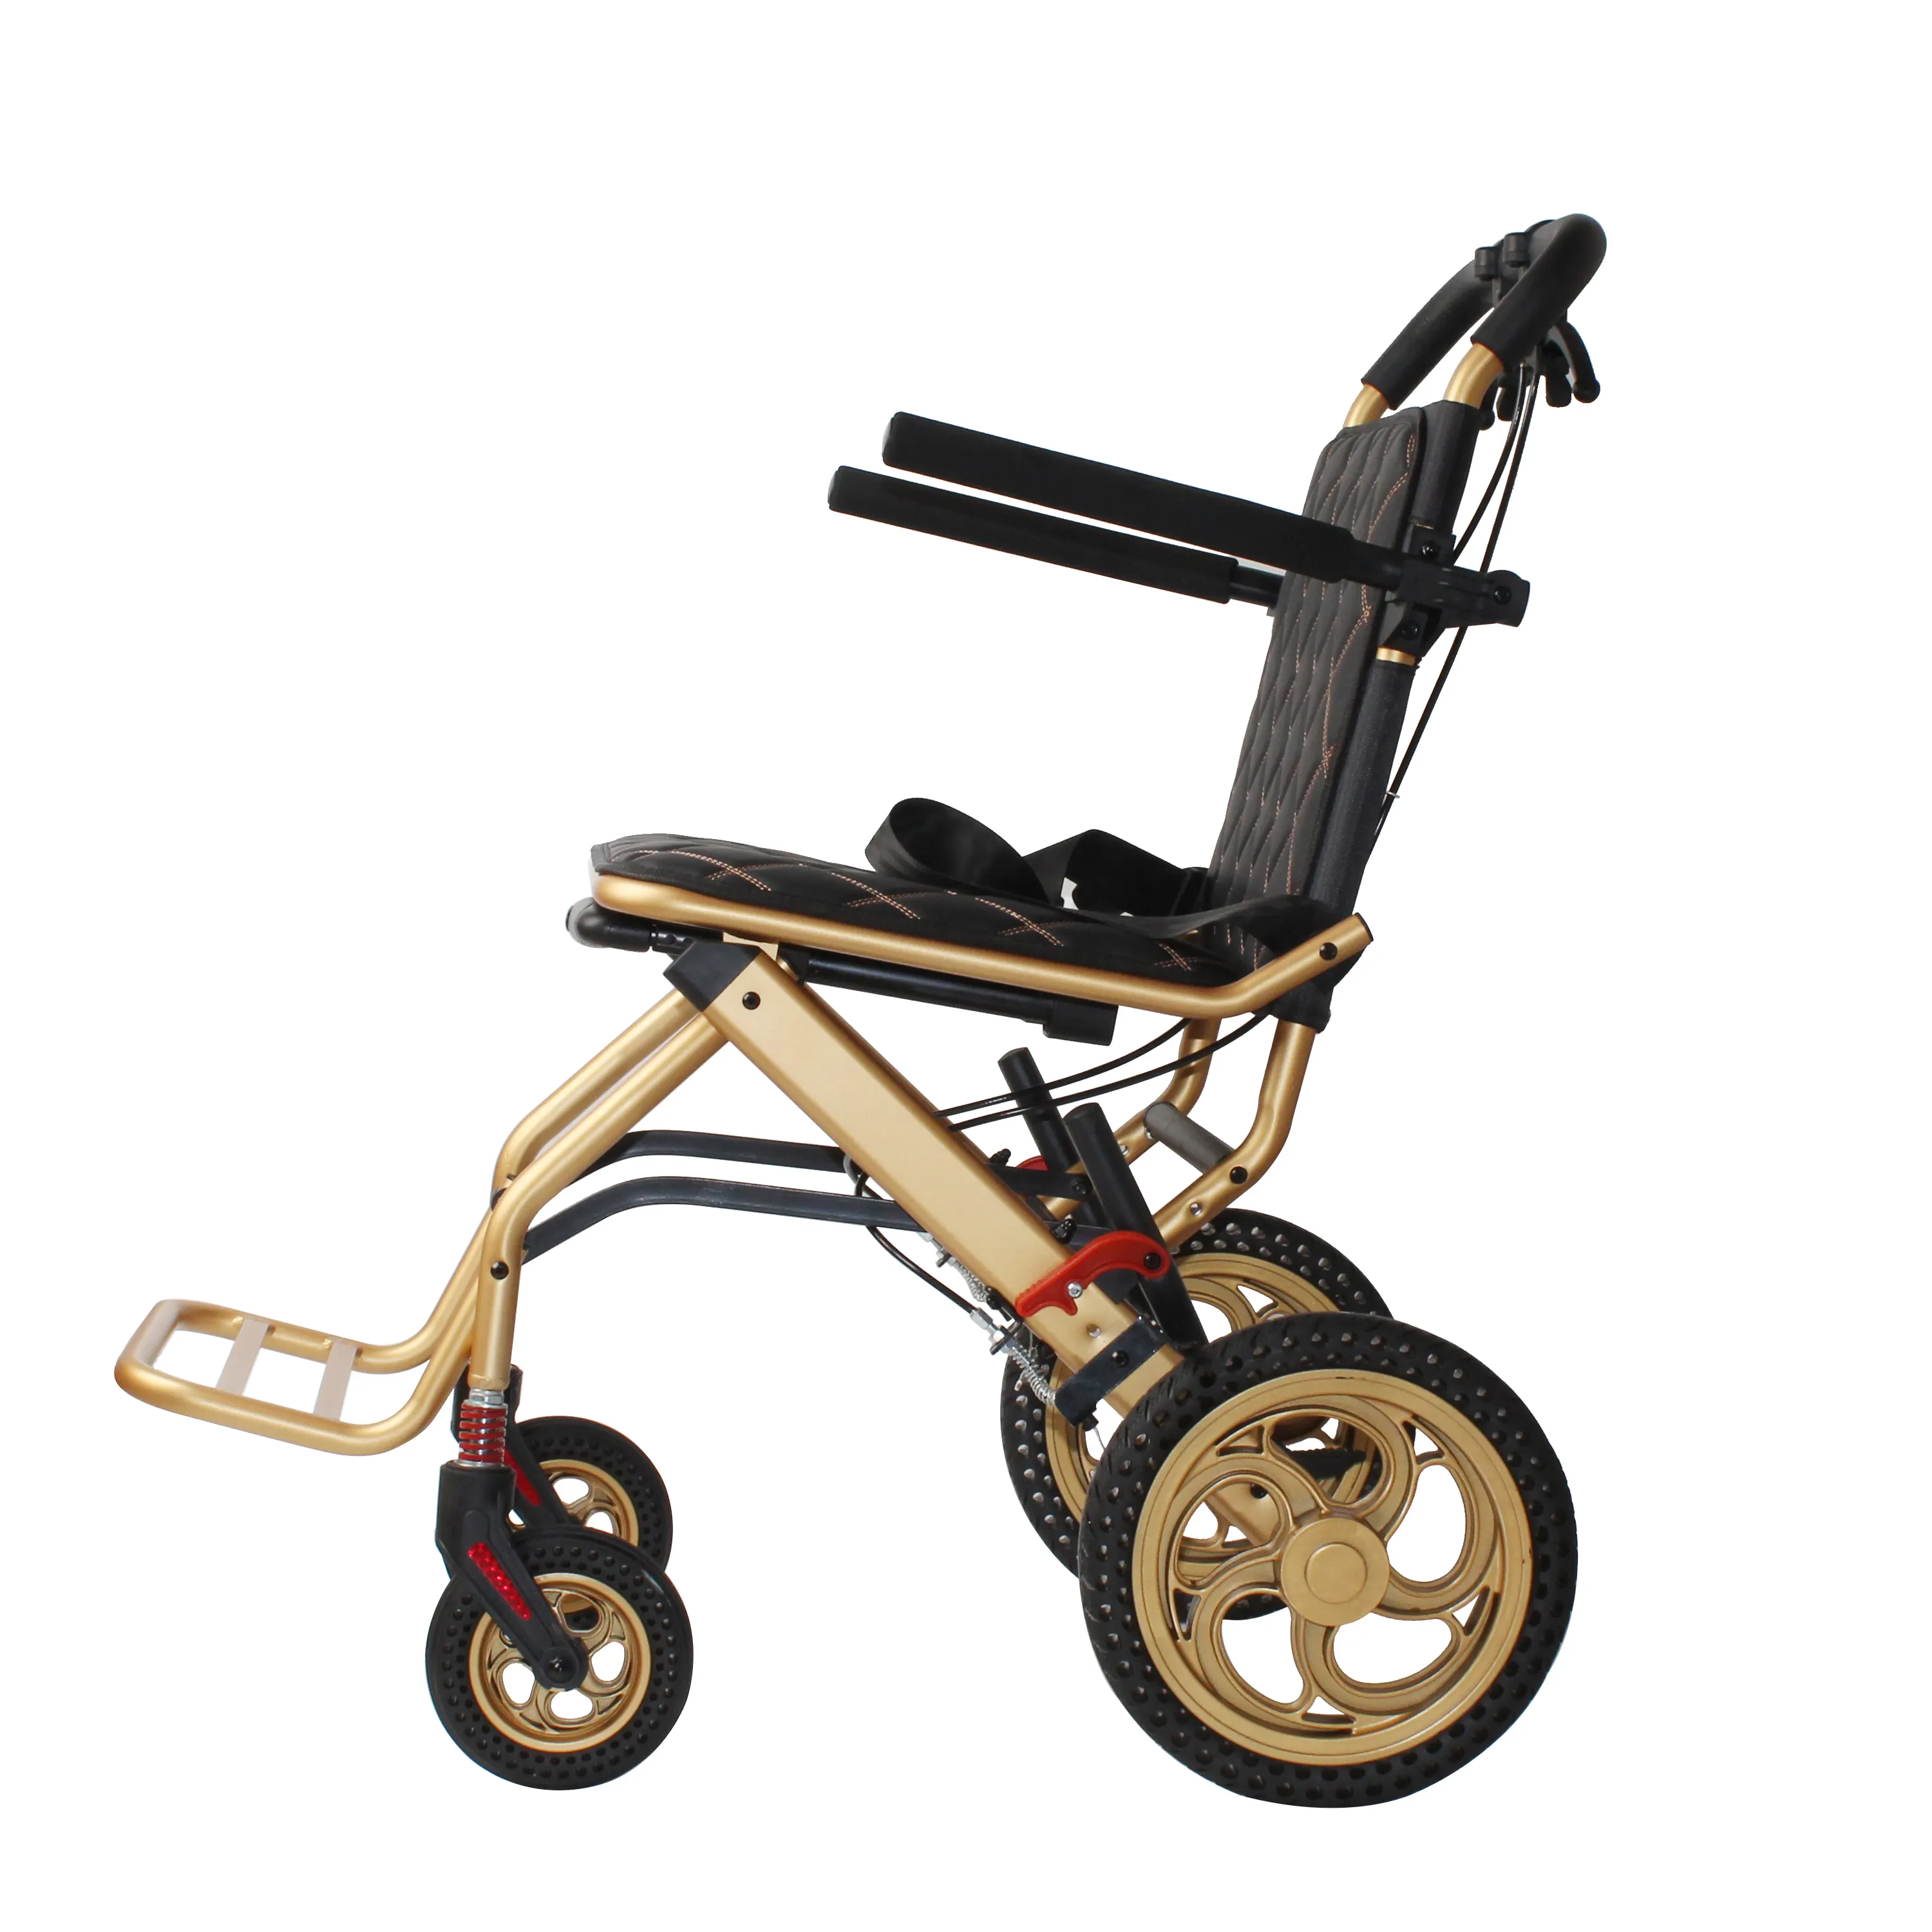 높은 등받이와 비행기 사용을위한 수하물 손잡이가있는 고품질 접이식 경량 알루미늄 여행용 휠체어